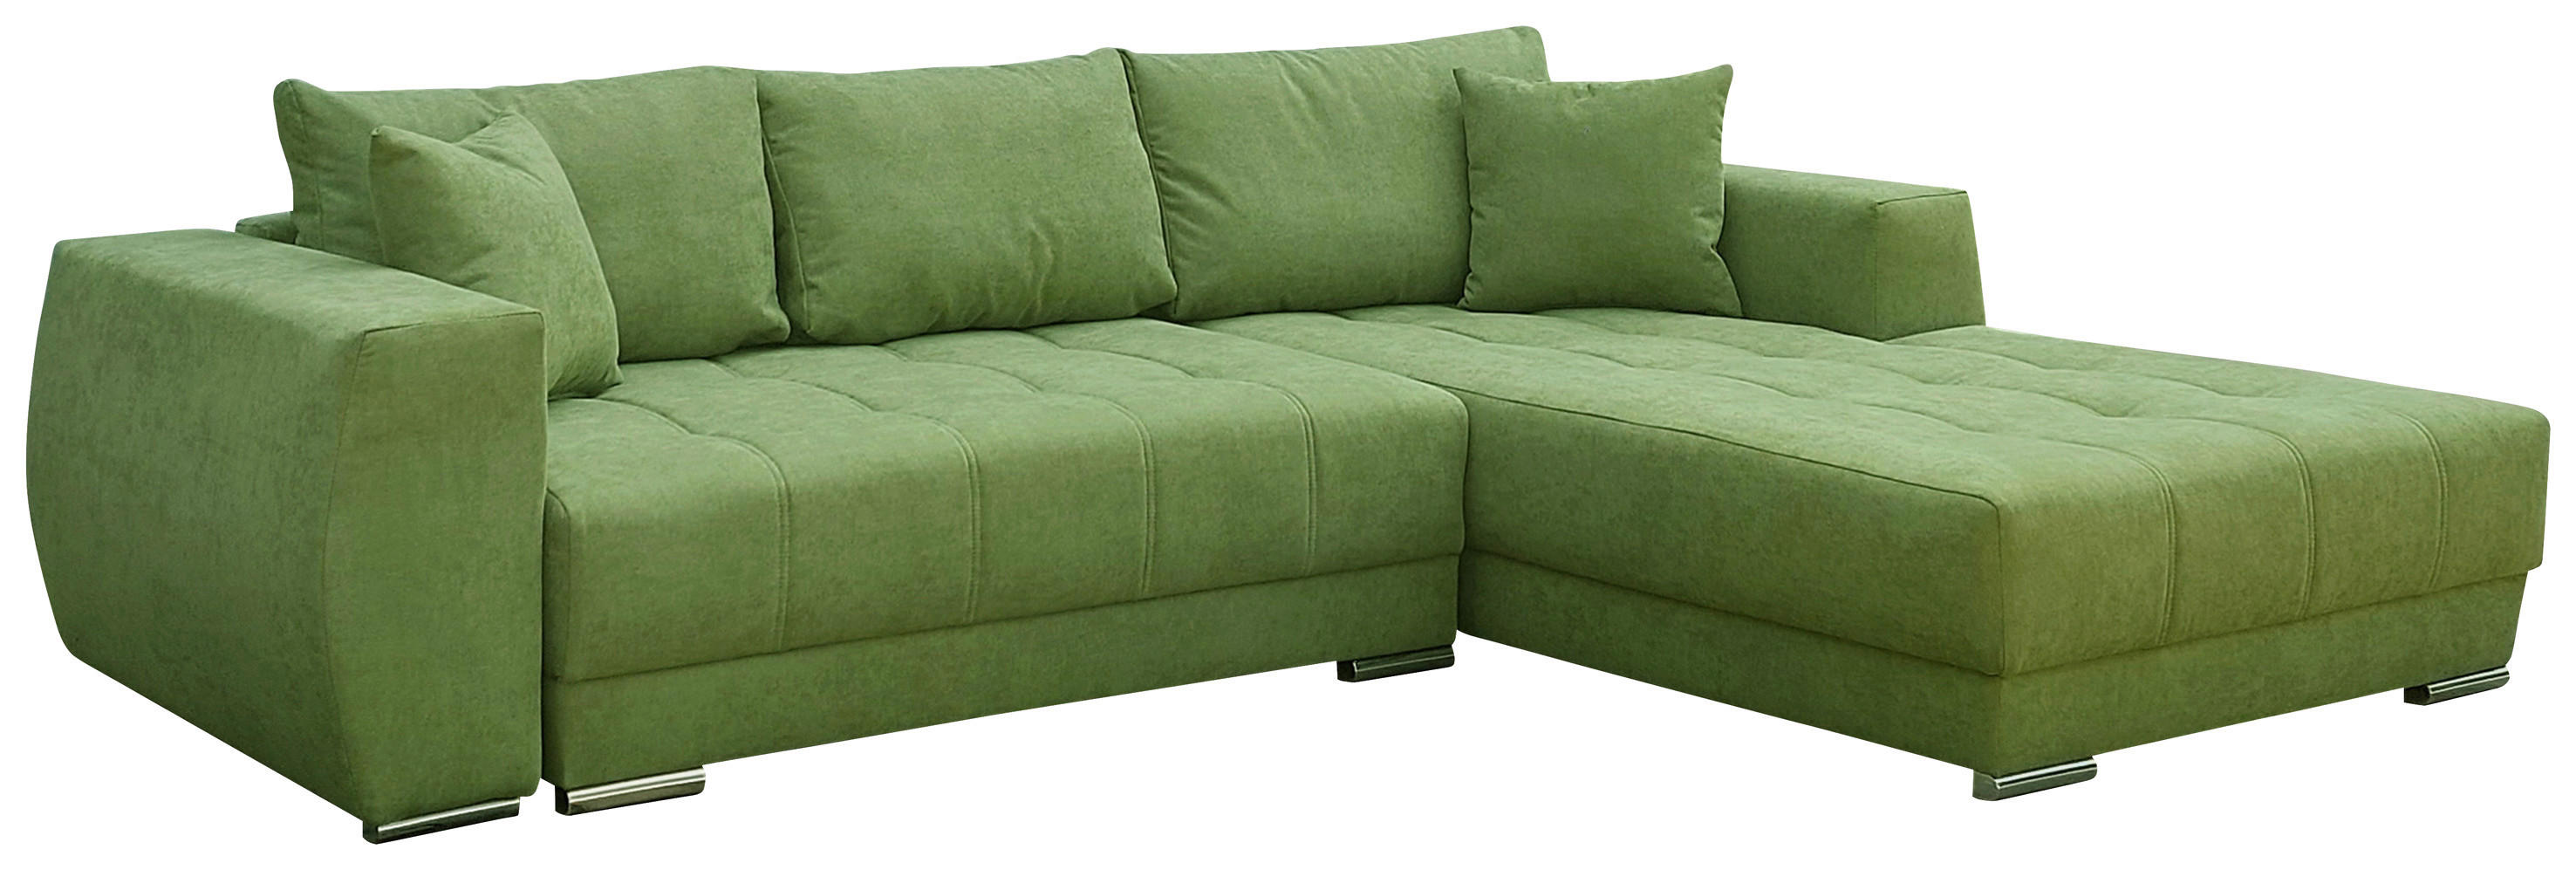 SEDEŽNA GARNITURA, zelena  - srebrne barve/zelena, Design, umetna masa/tekstil (295/200cm) - Carryhome